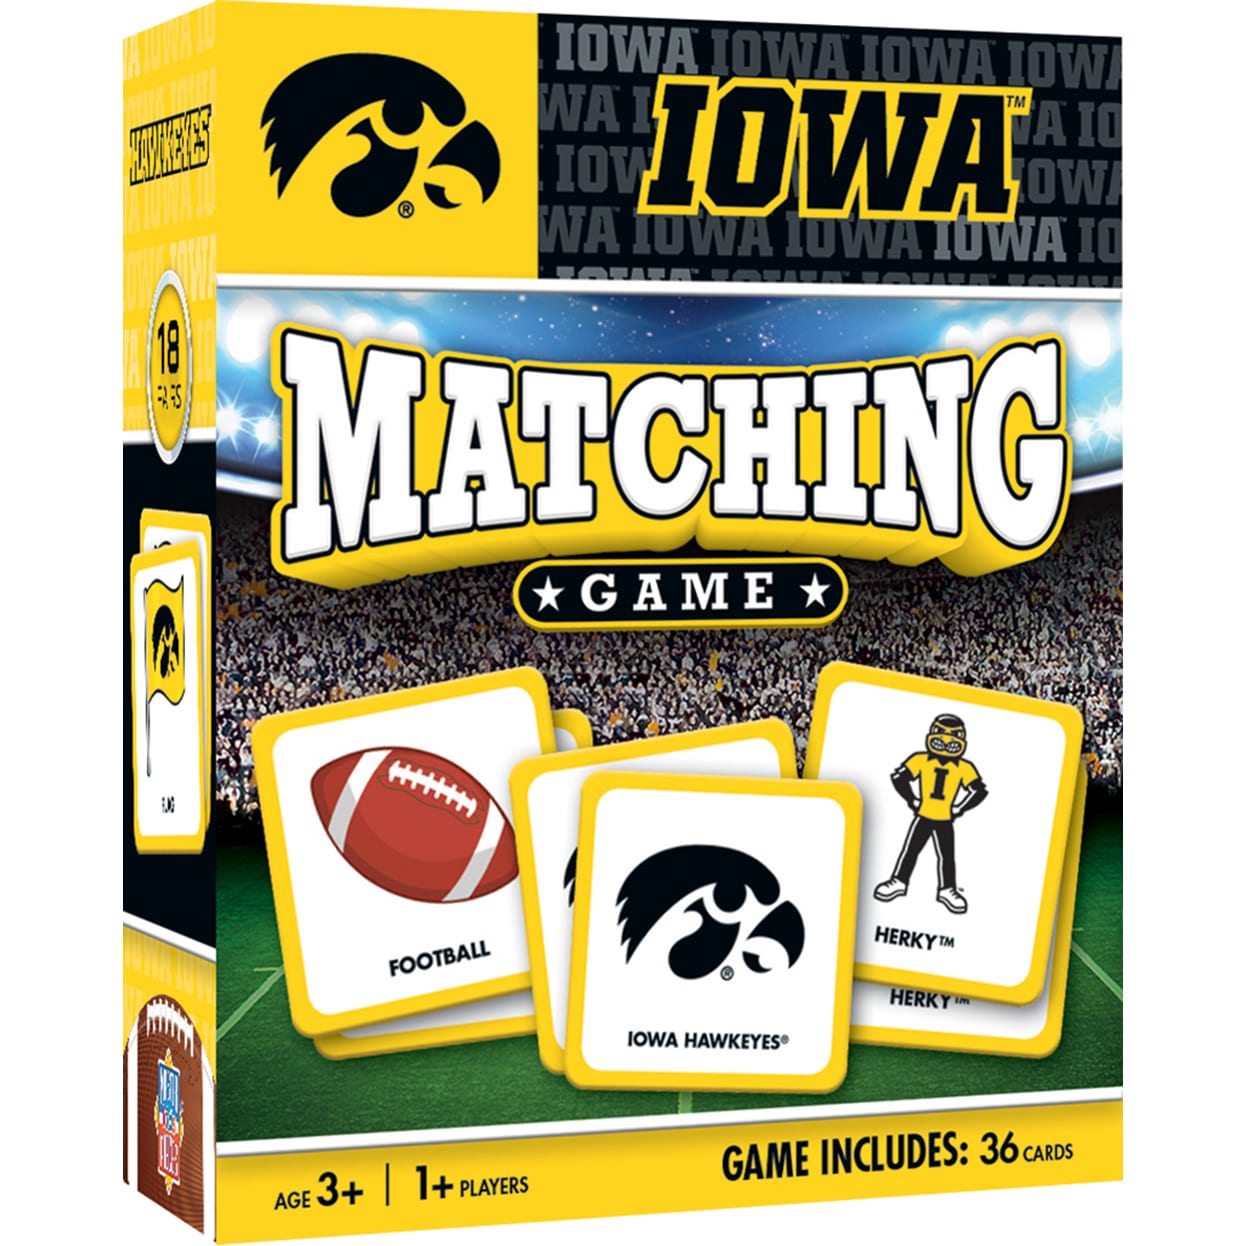 Iowa Matching Game